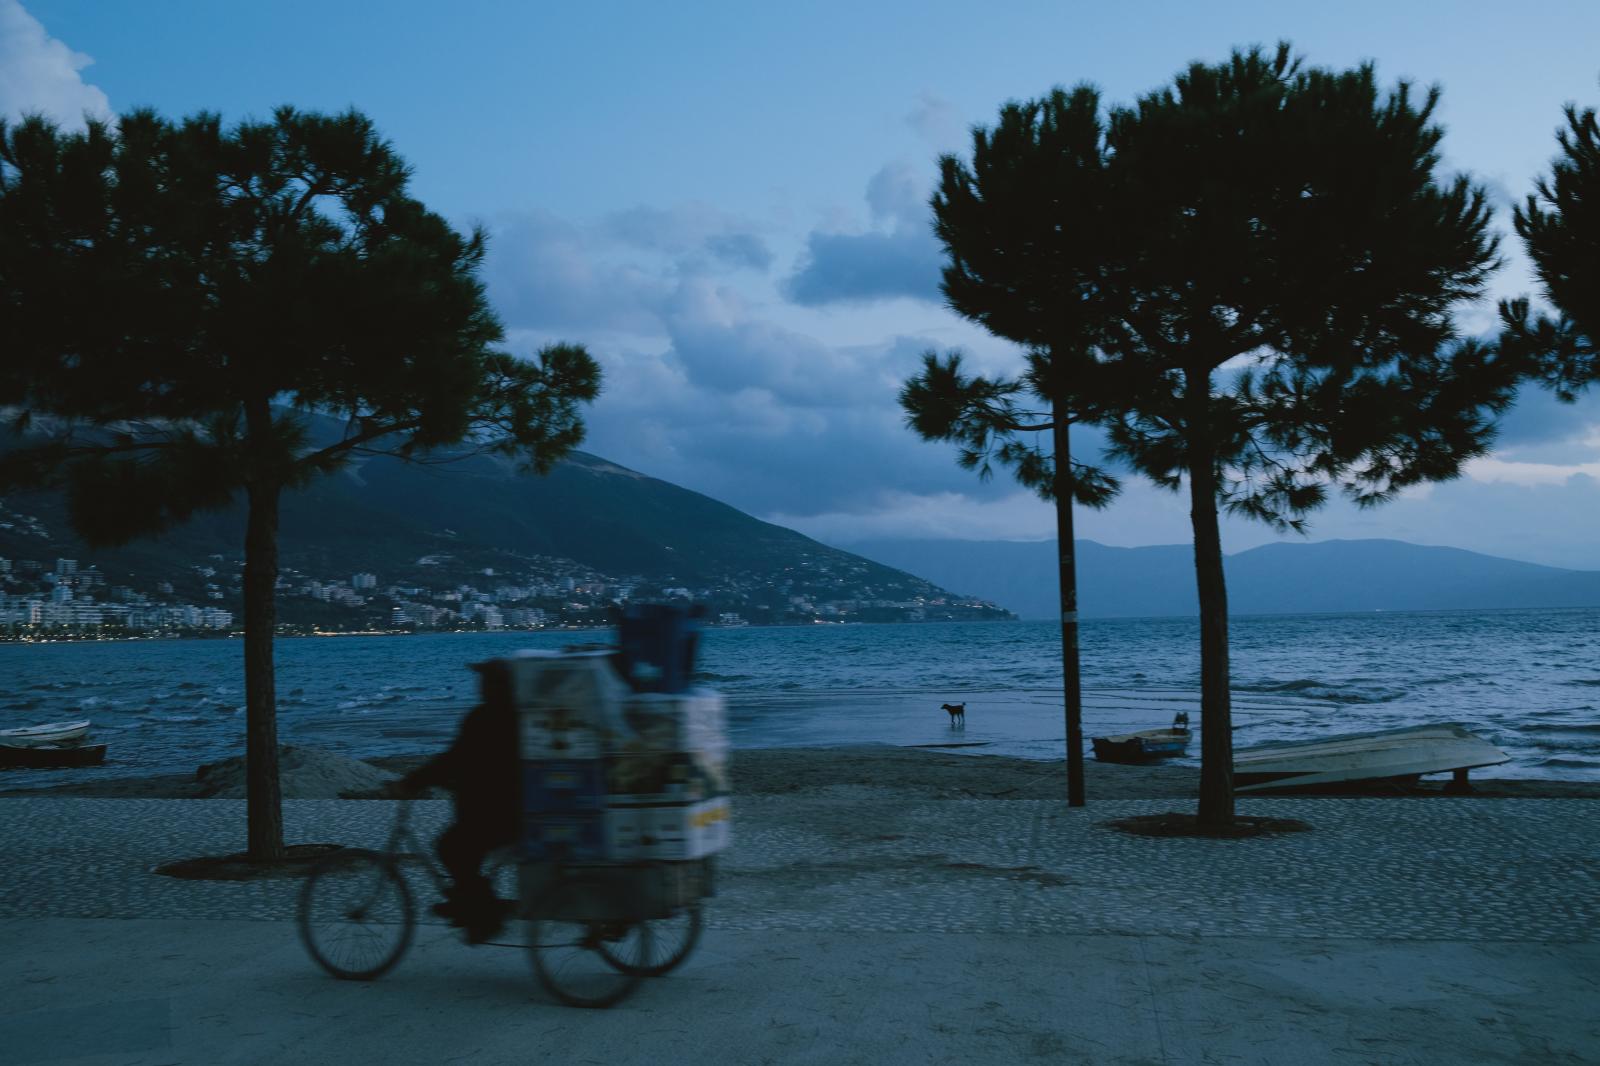 Vlorë Seafront, Albania